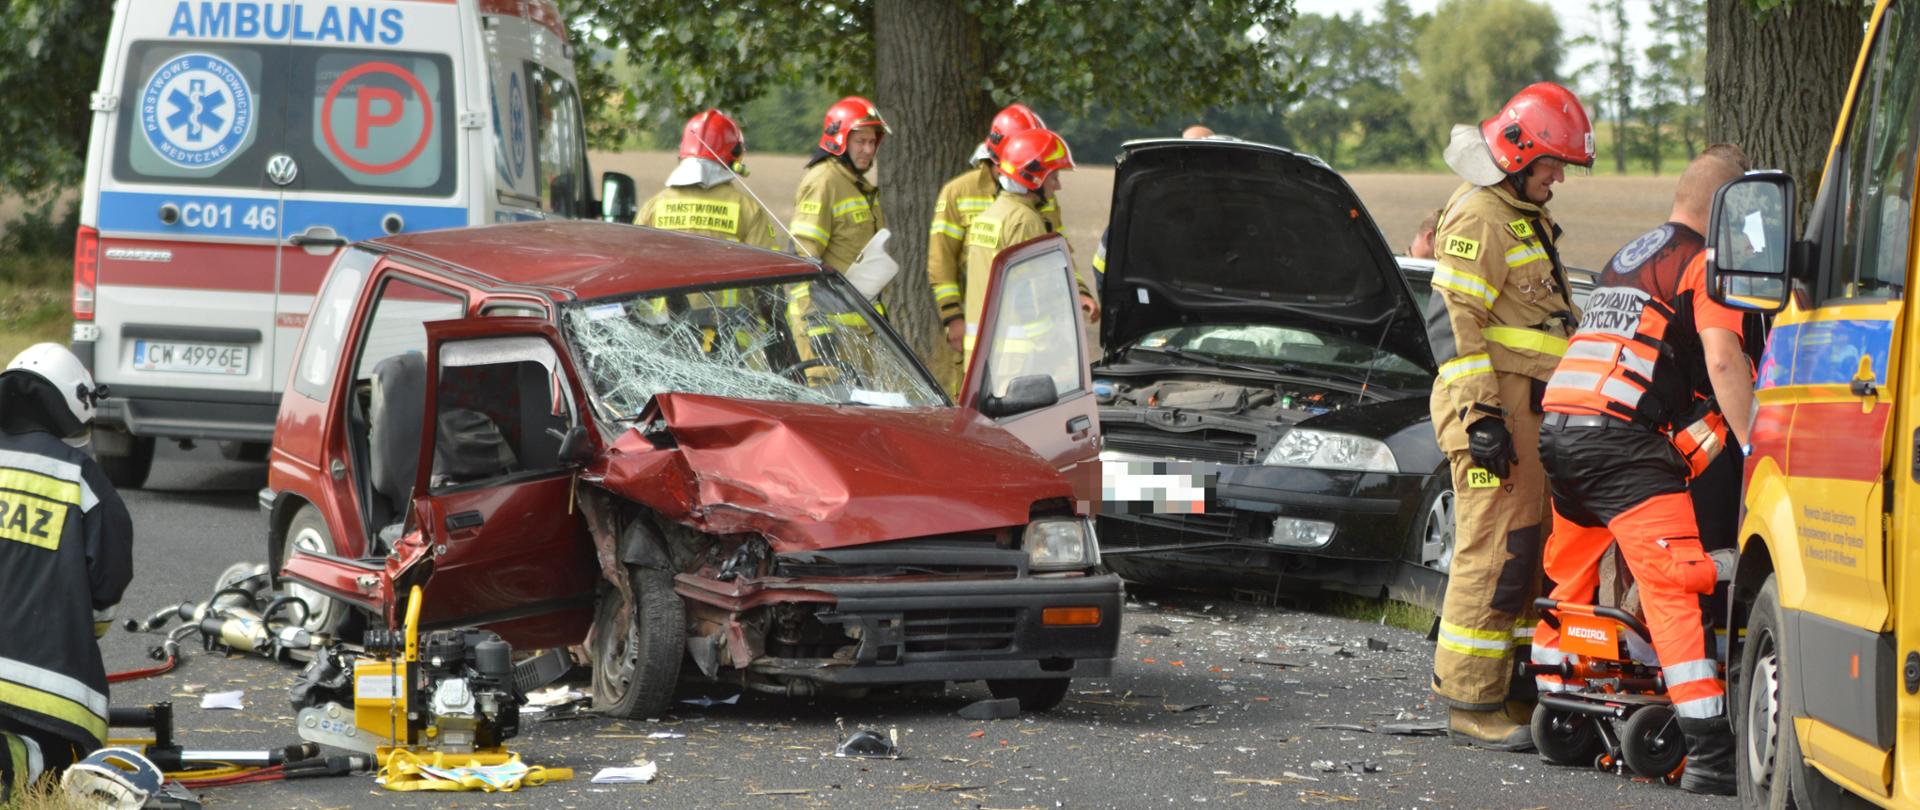 Na zdjęciu widać dwa rozbite auta osobowe. Wokół pracują strażacy w liczbie 5 z PSP, 1 z OSP oraz służba lotniczego pogotowia ratunkowego. Z prawej strony widać fragment kabiny karetki pogotowia, za wrakami stoi tyłem ambulans. W tle drzewa.